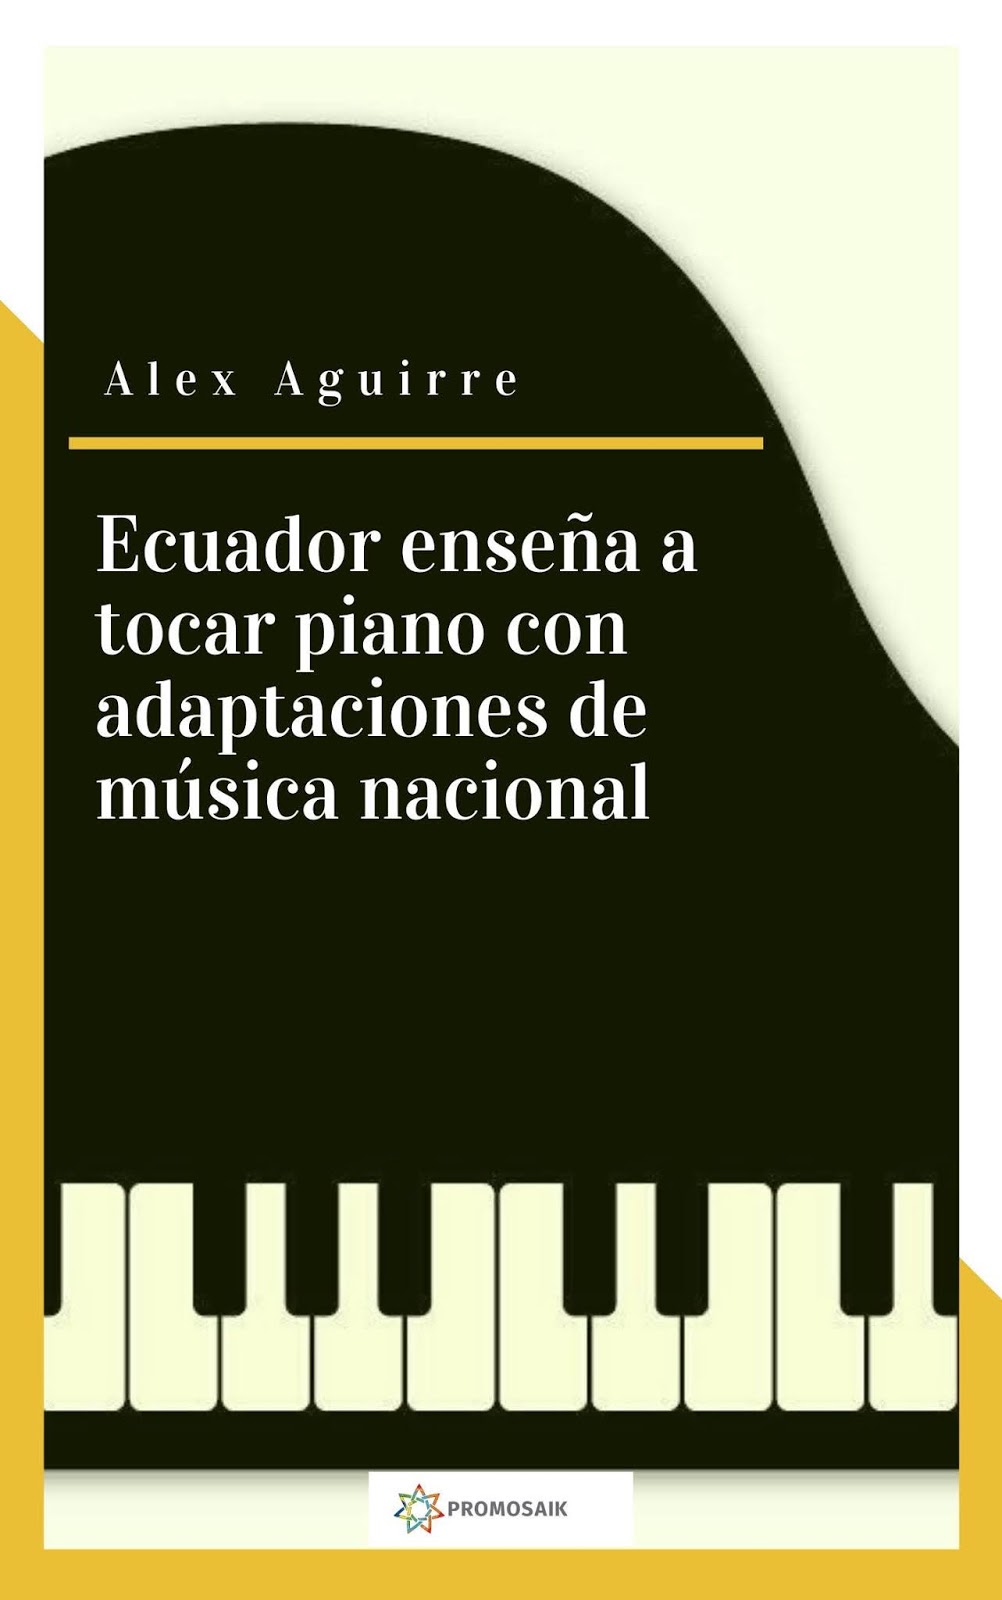 Conversación con Alex Aguirre, autor de ”Ecuador enseña a tocar piano con adaptaciones de música nacional.”